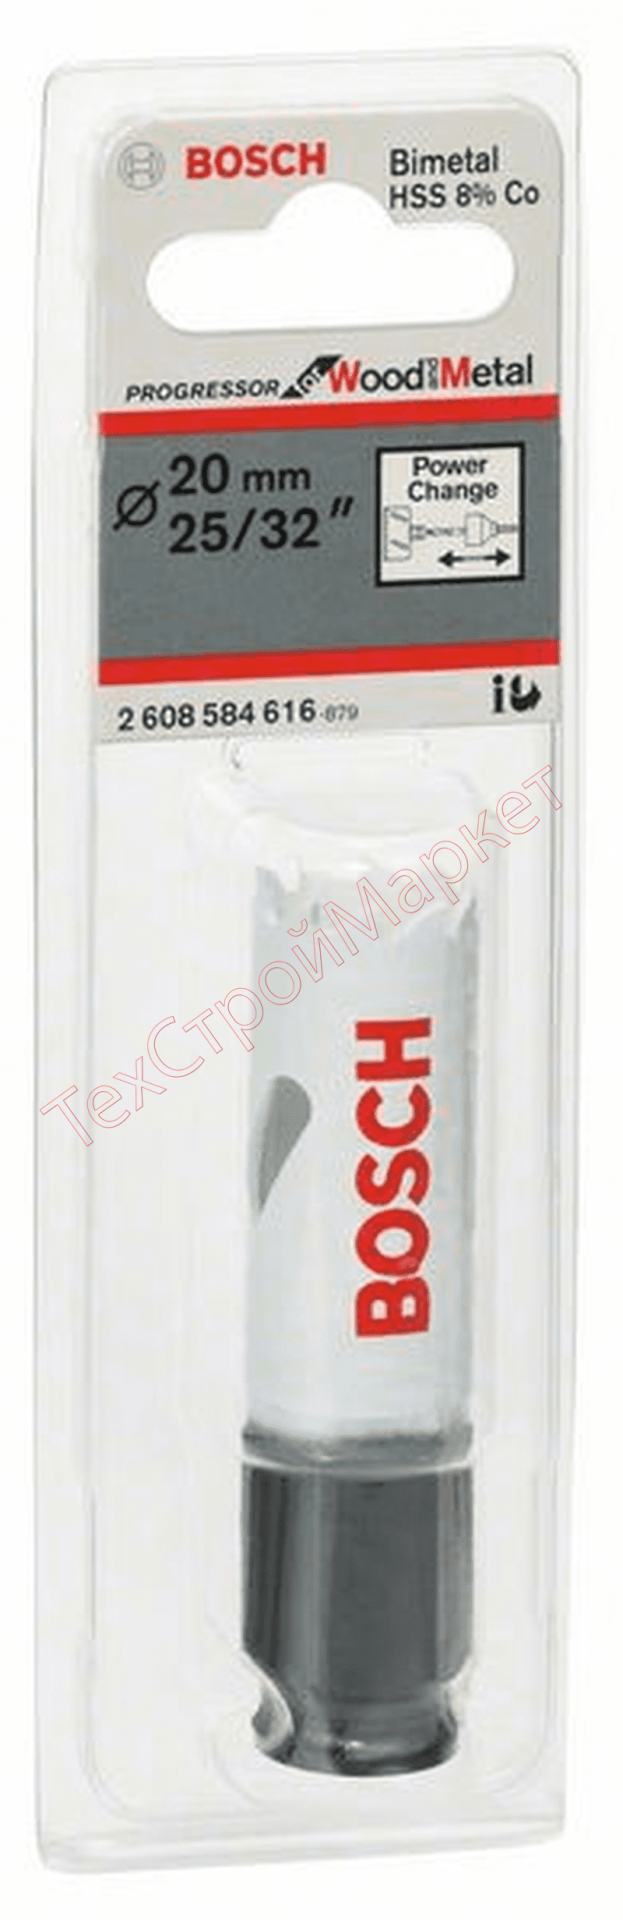 Коронка Bosch 20 HSS-CO (616)